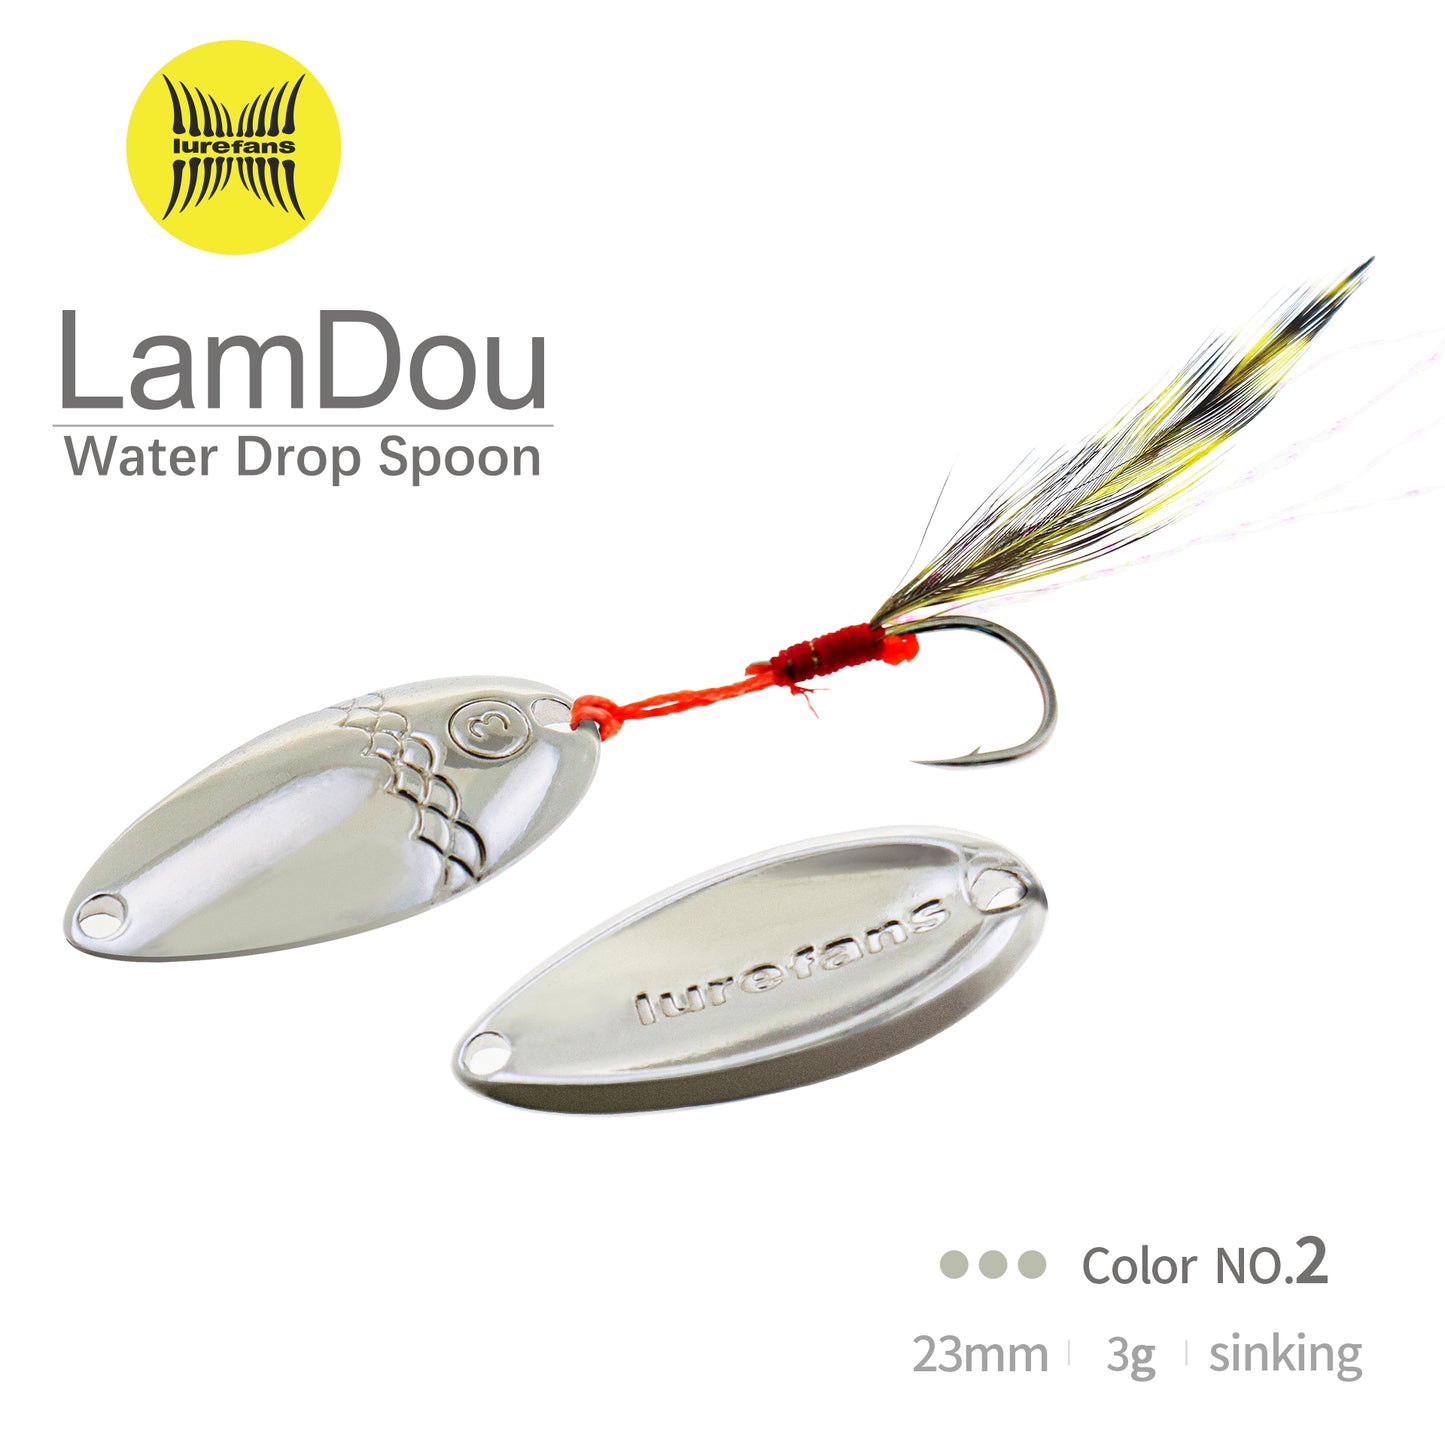 LAMDOU-Water Drop Spoon 23mm (3g)